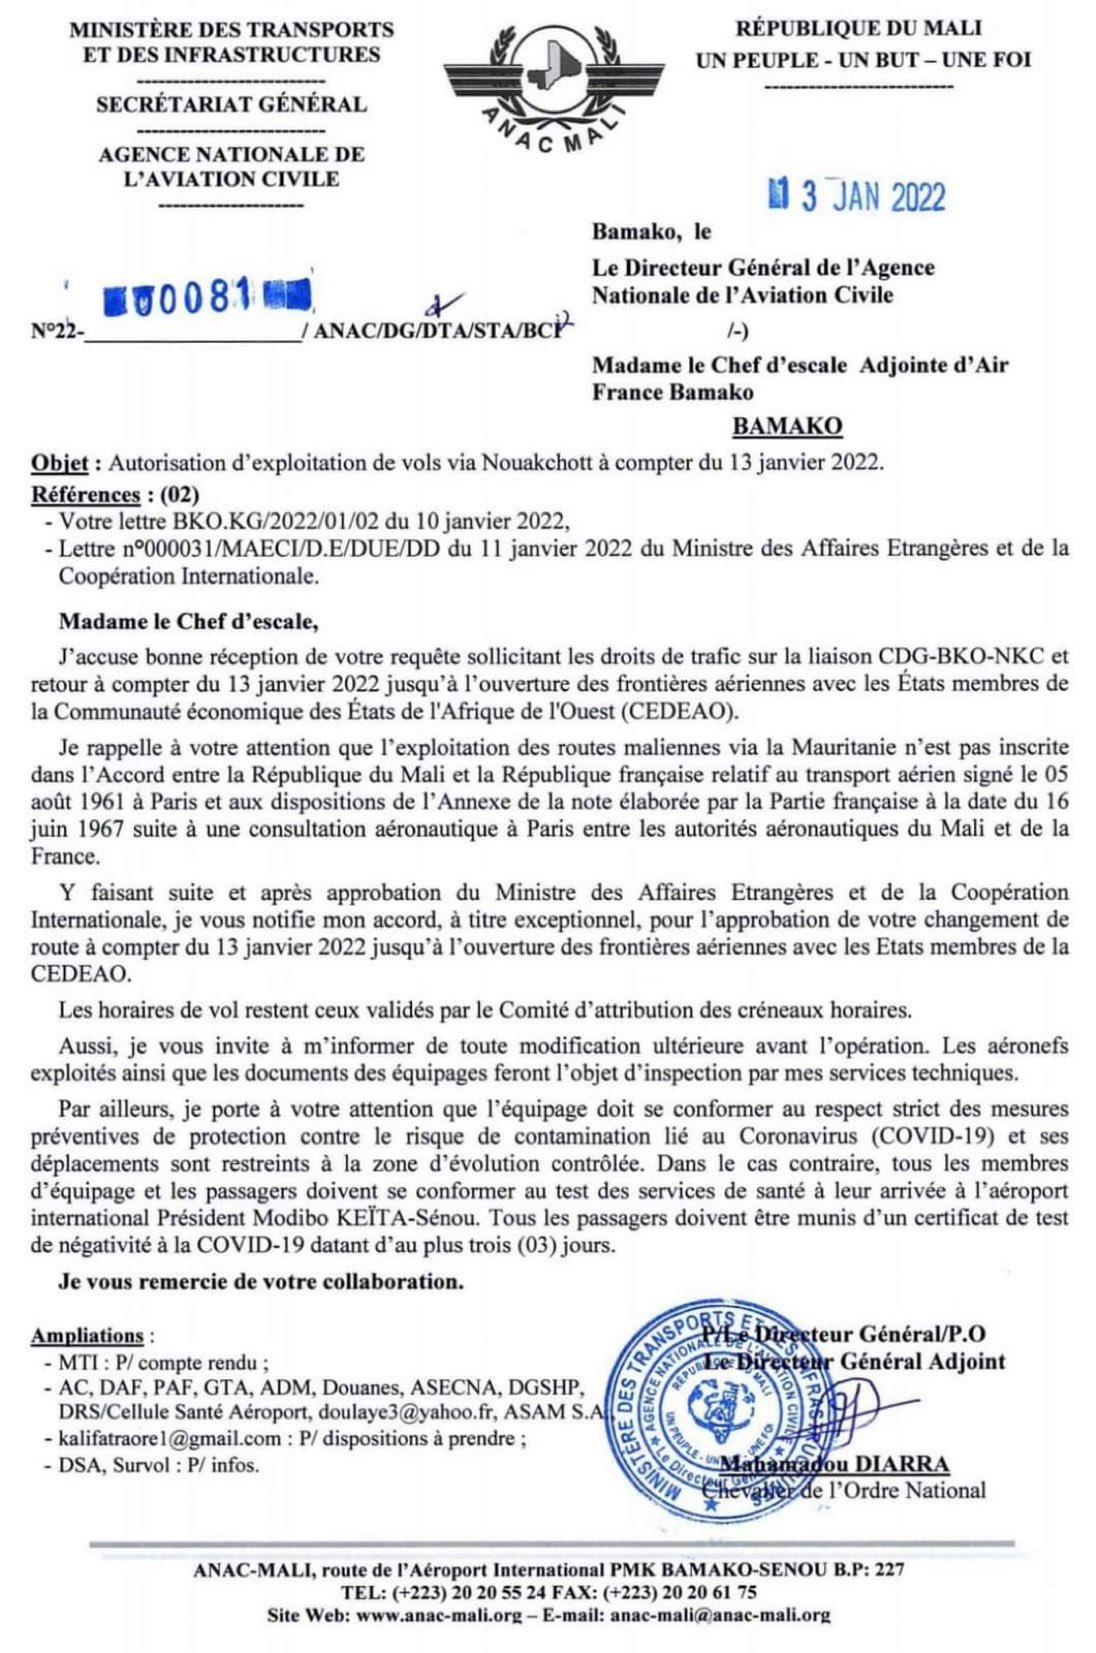 Sanctions CEDEAO- Reprise de ses vols sur Bamako : Air France négocie et obtient l’autorisation d’exploitation des vols via Nouakchott